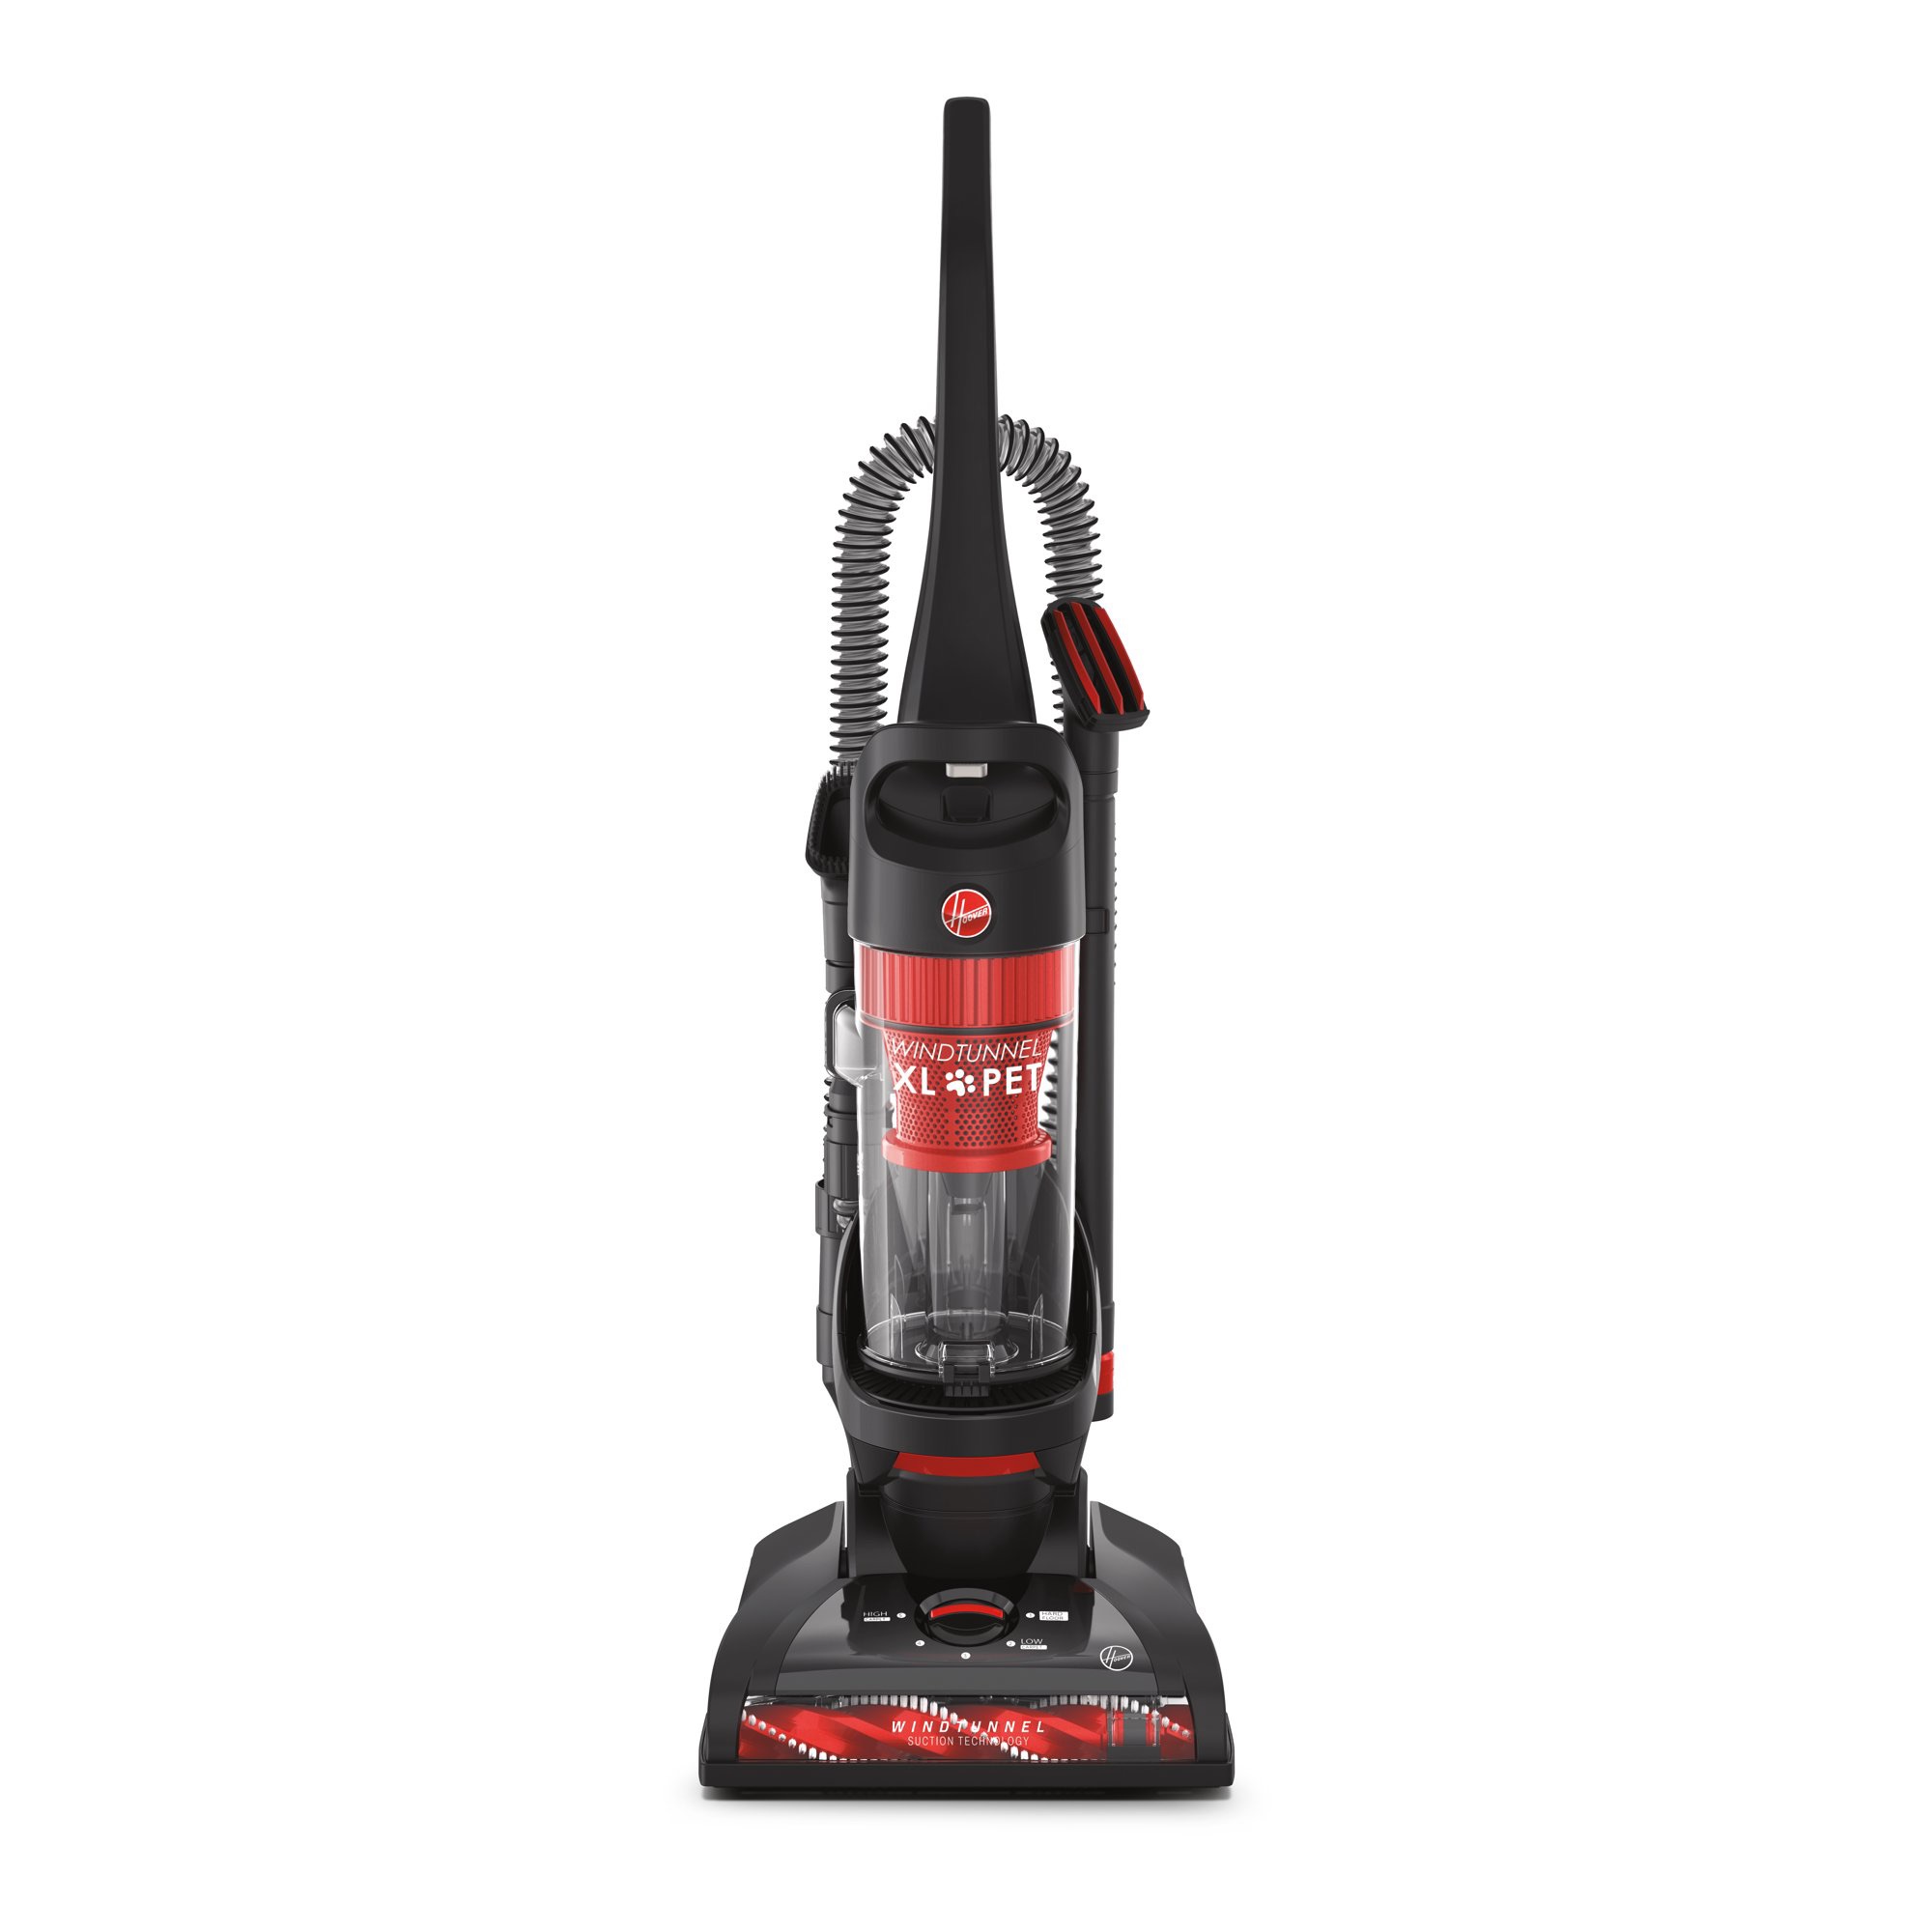 Hoover WindTunnel 吸尘器XL Pet Bagless Upright Vacuum, UH71105DI - Walmart.com - Walmart.com